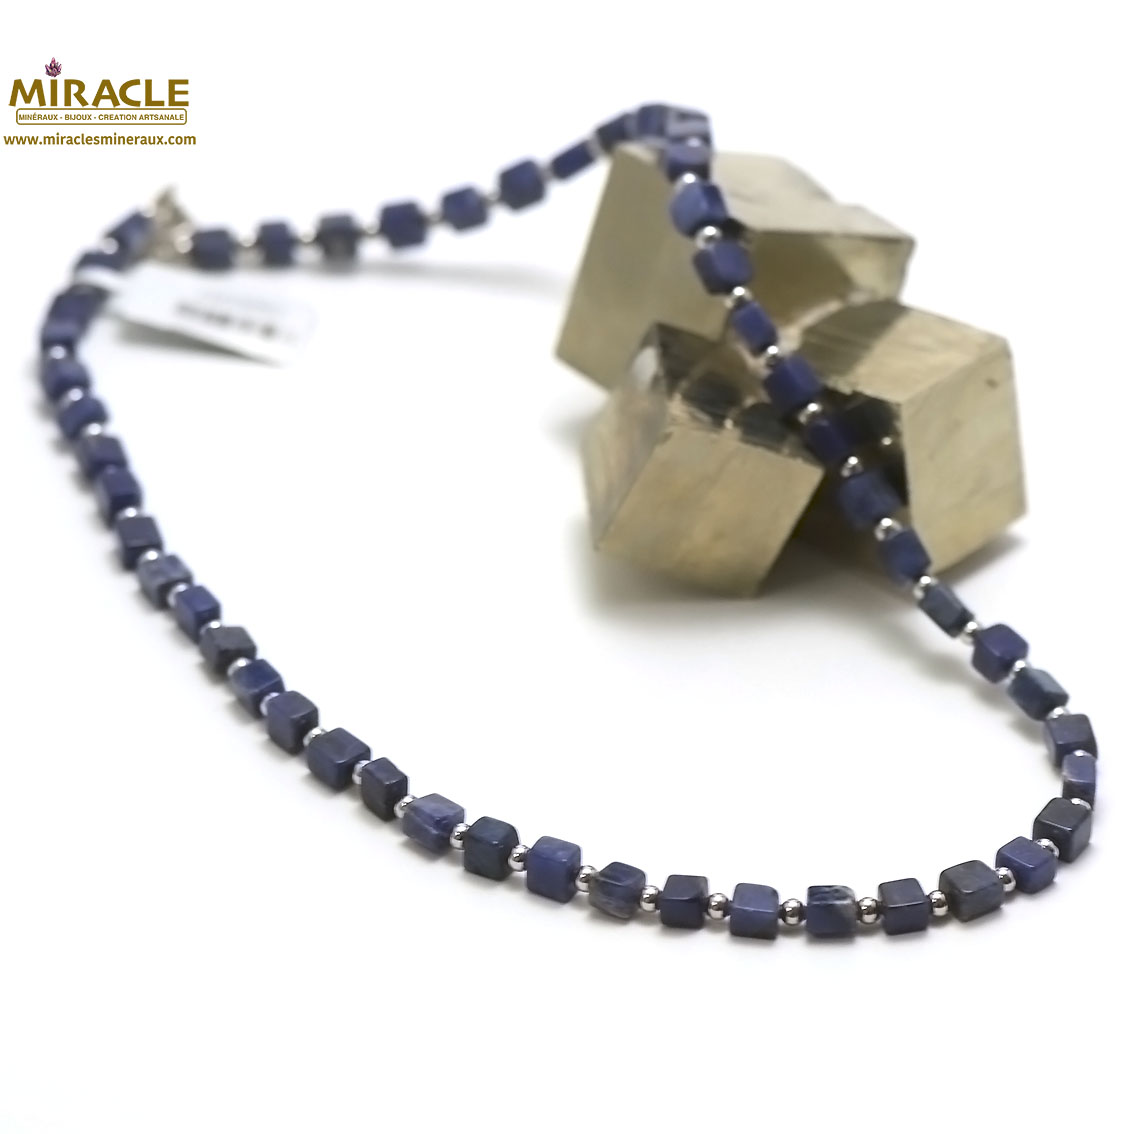 A carrée -perle argenté 1 collier en pierre naturelle de sodalite